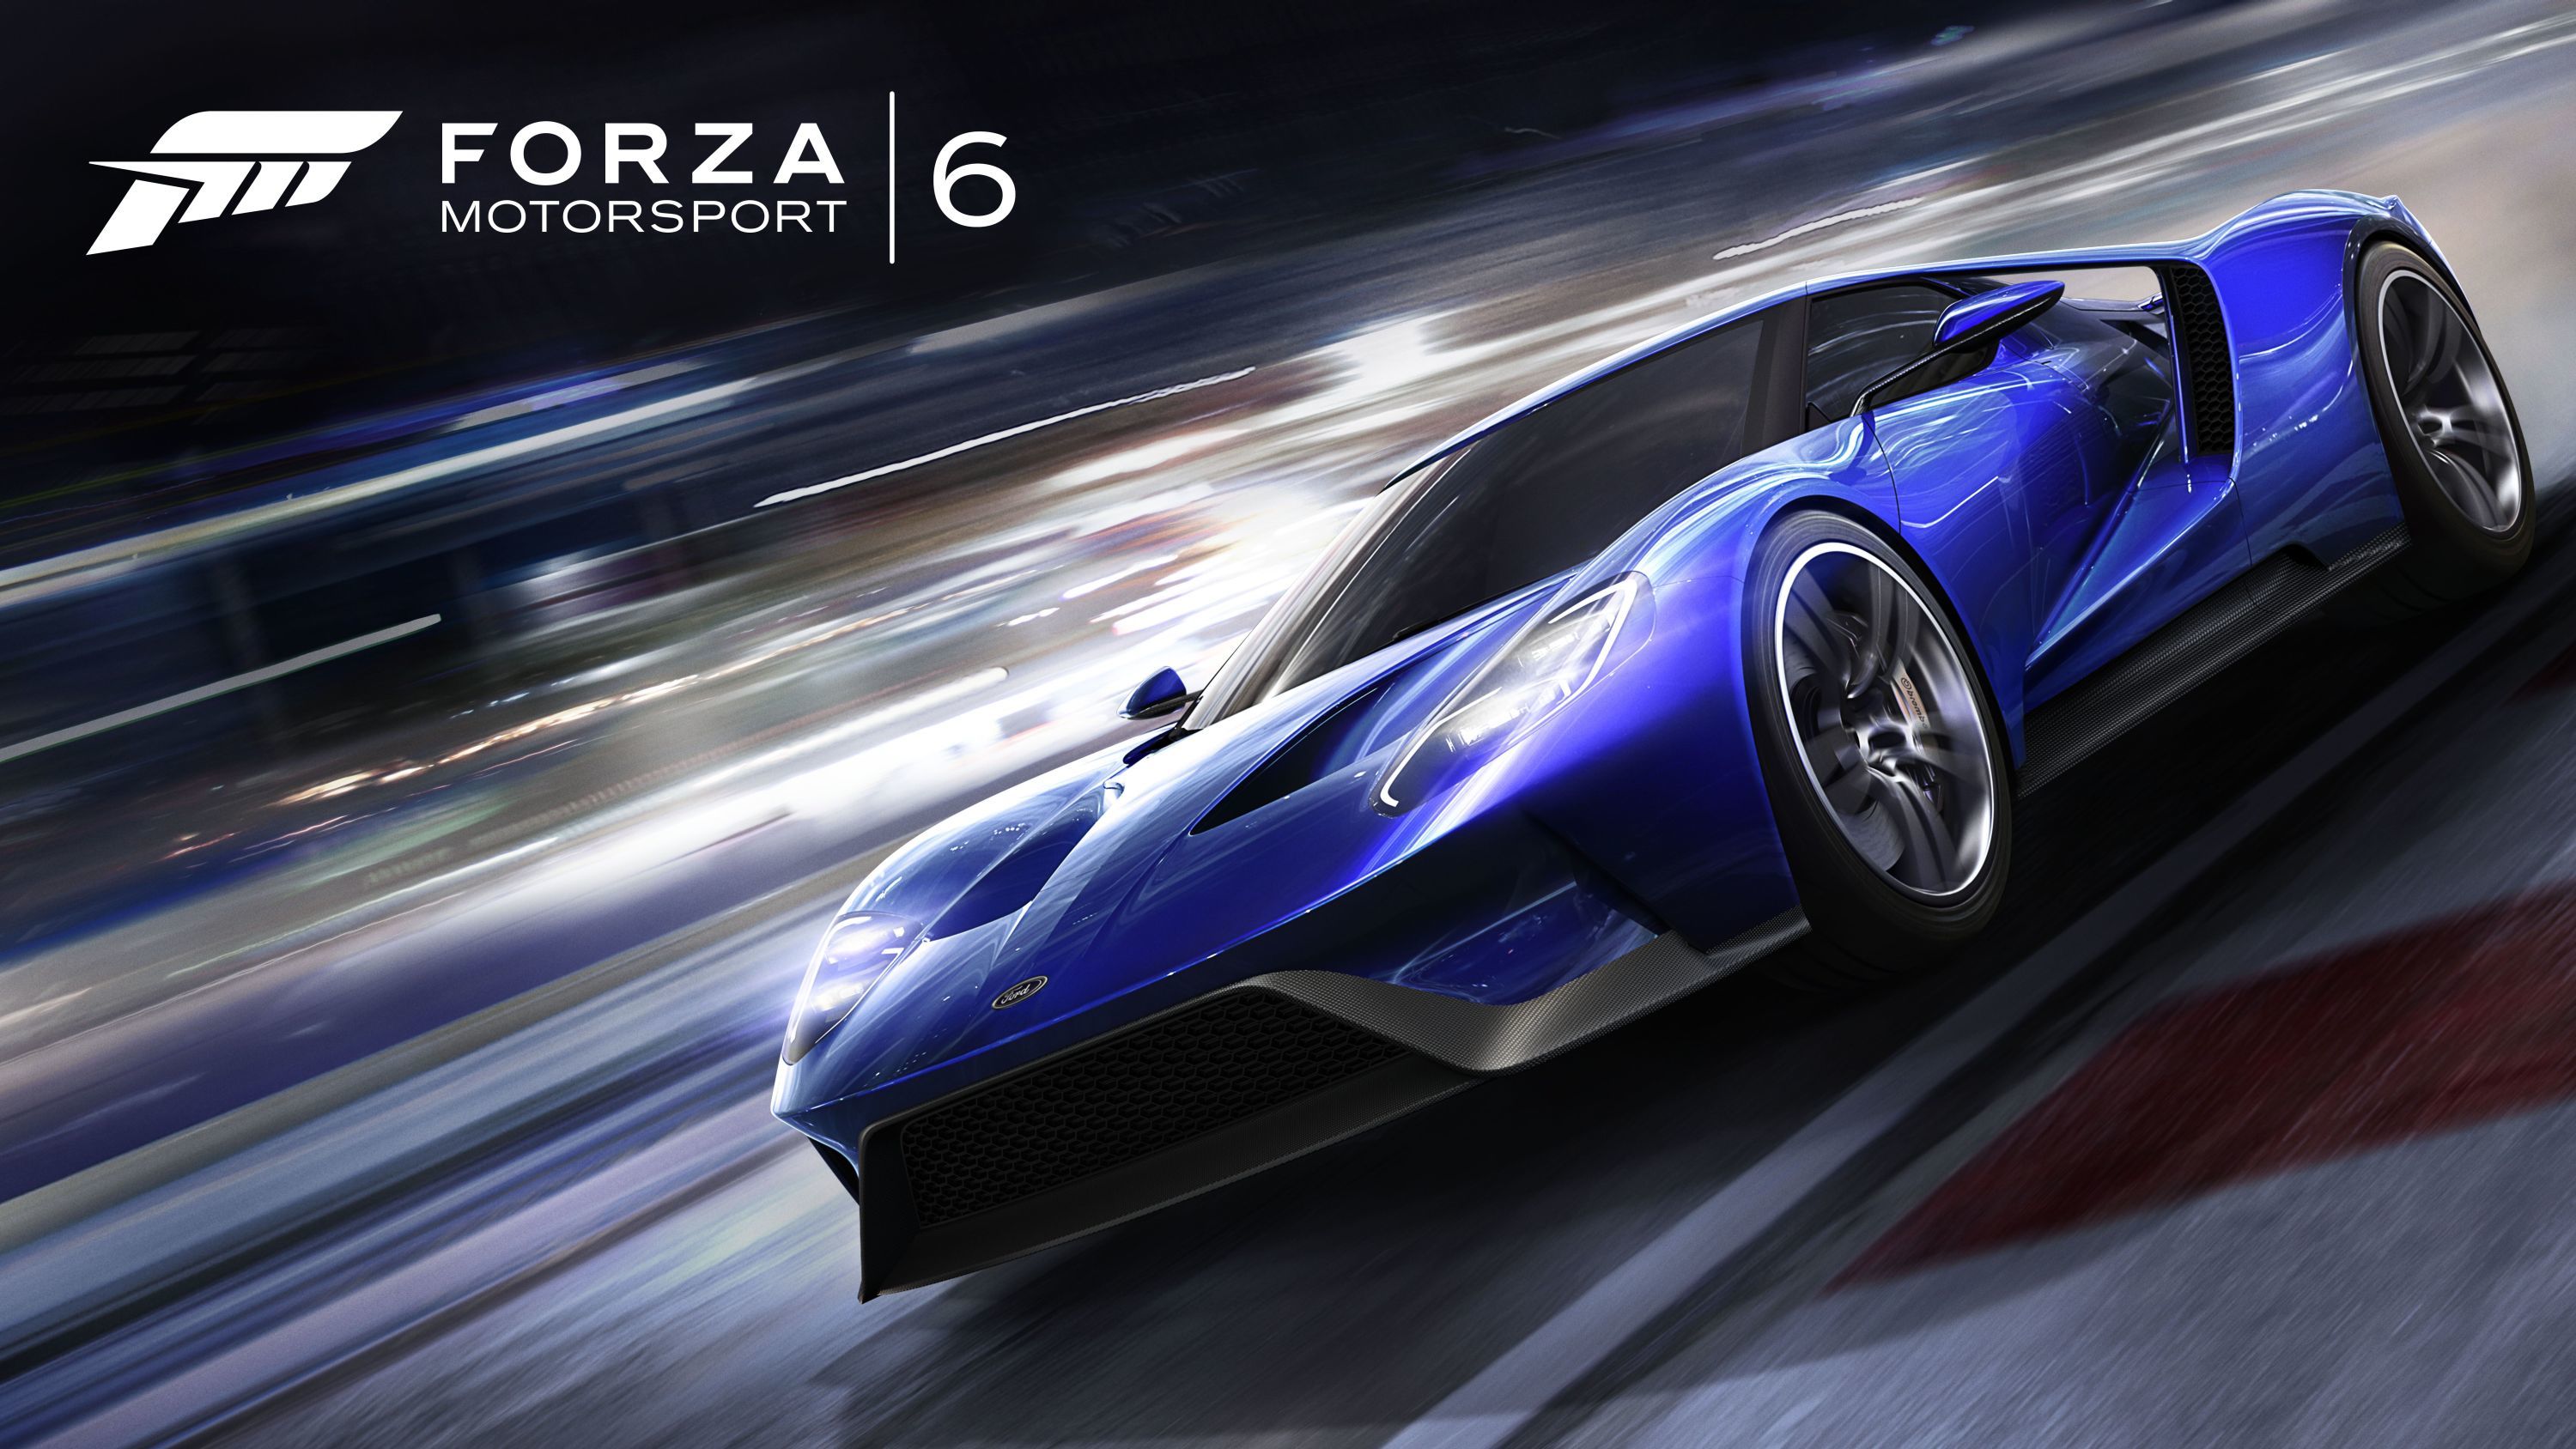 Скачать обои бесплатно Forza Motorsport 6, Тачки (Cars), Вид Сбоку, Арт картинка на рабочий стол ПК